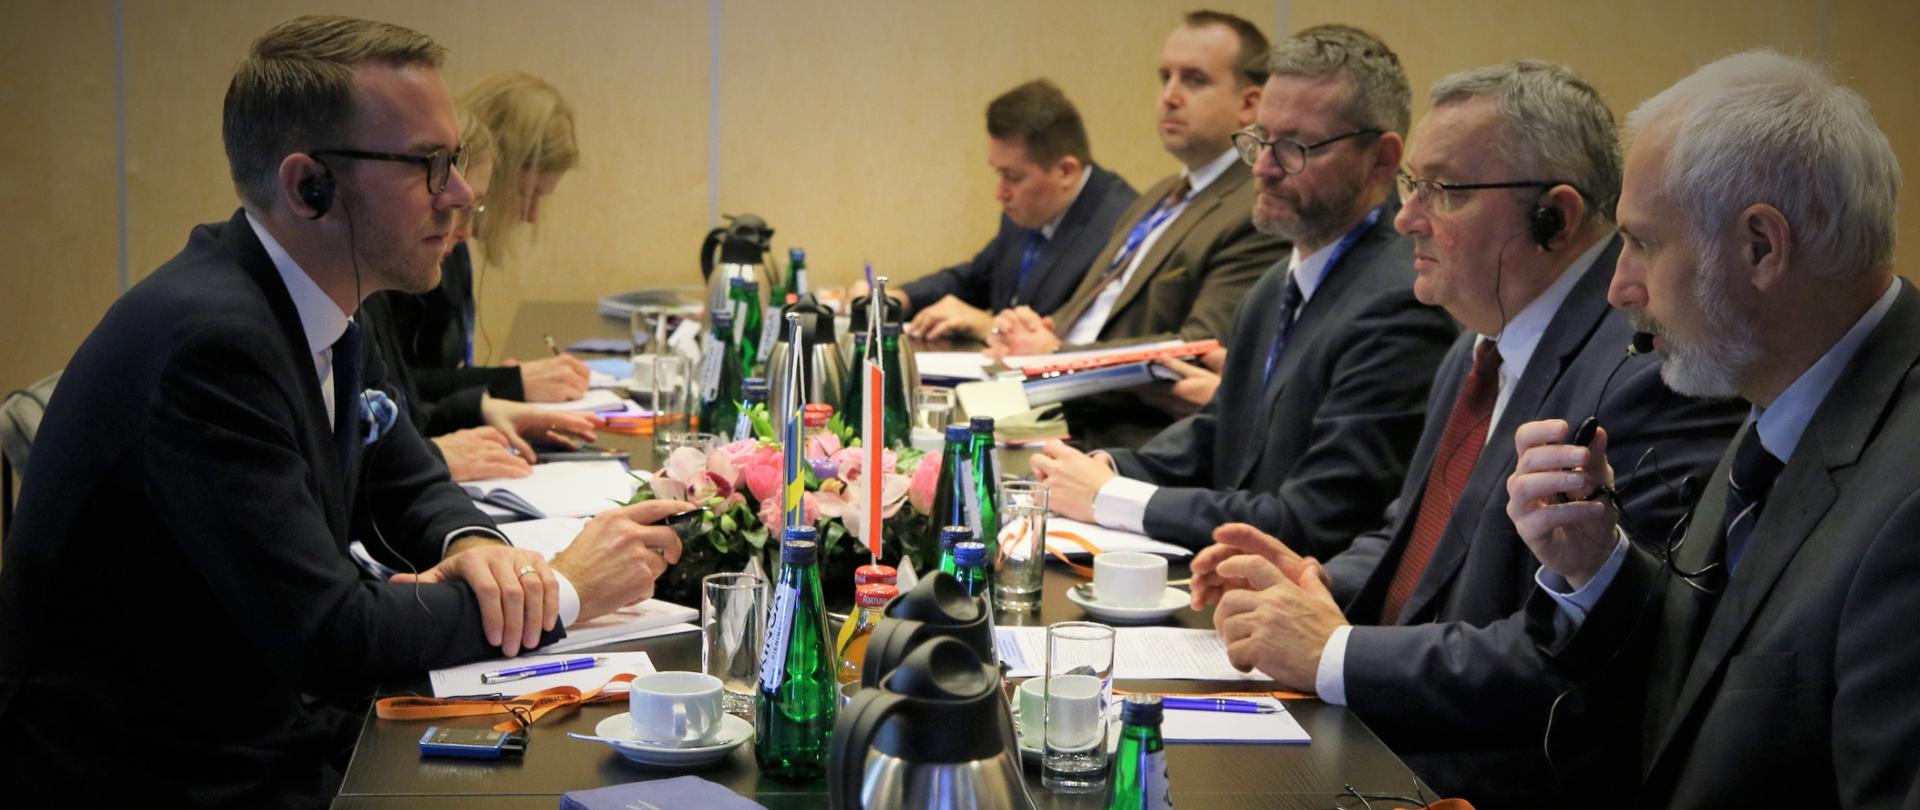 Minister infrastruktury Andrzej Adamczyk wraz z wiceministrem Grzegorzem Witkowskim w trakcie rozmowy z delegacją szwedzką